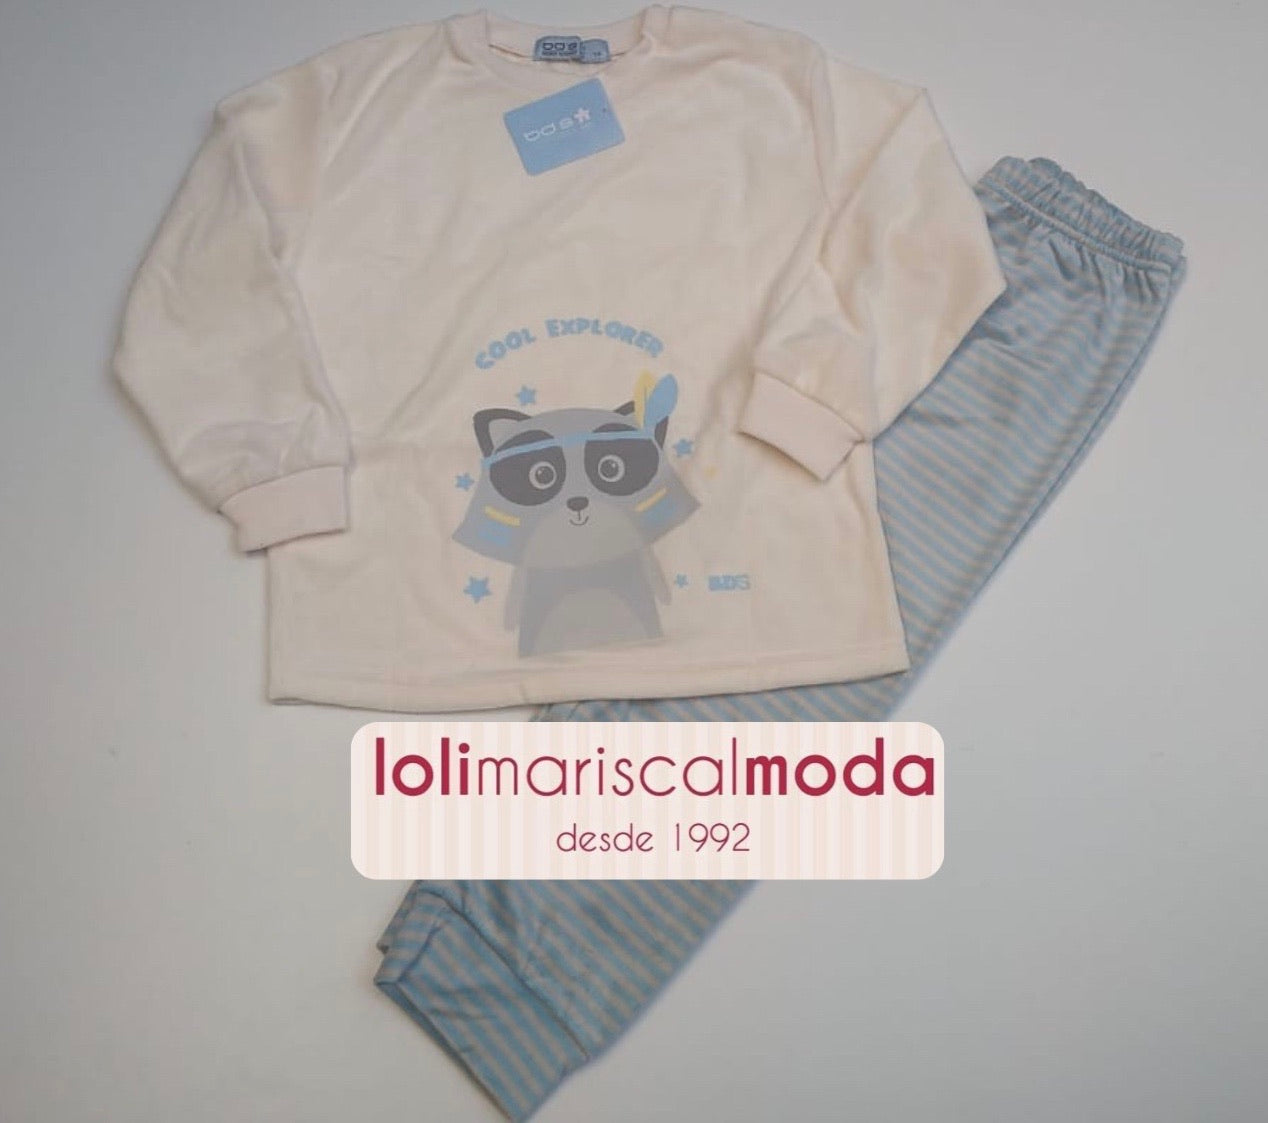 Pijamas Invierno niño Cool Explorer lolimariscalmoda 0.00